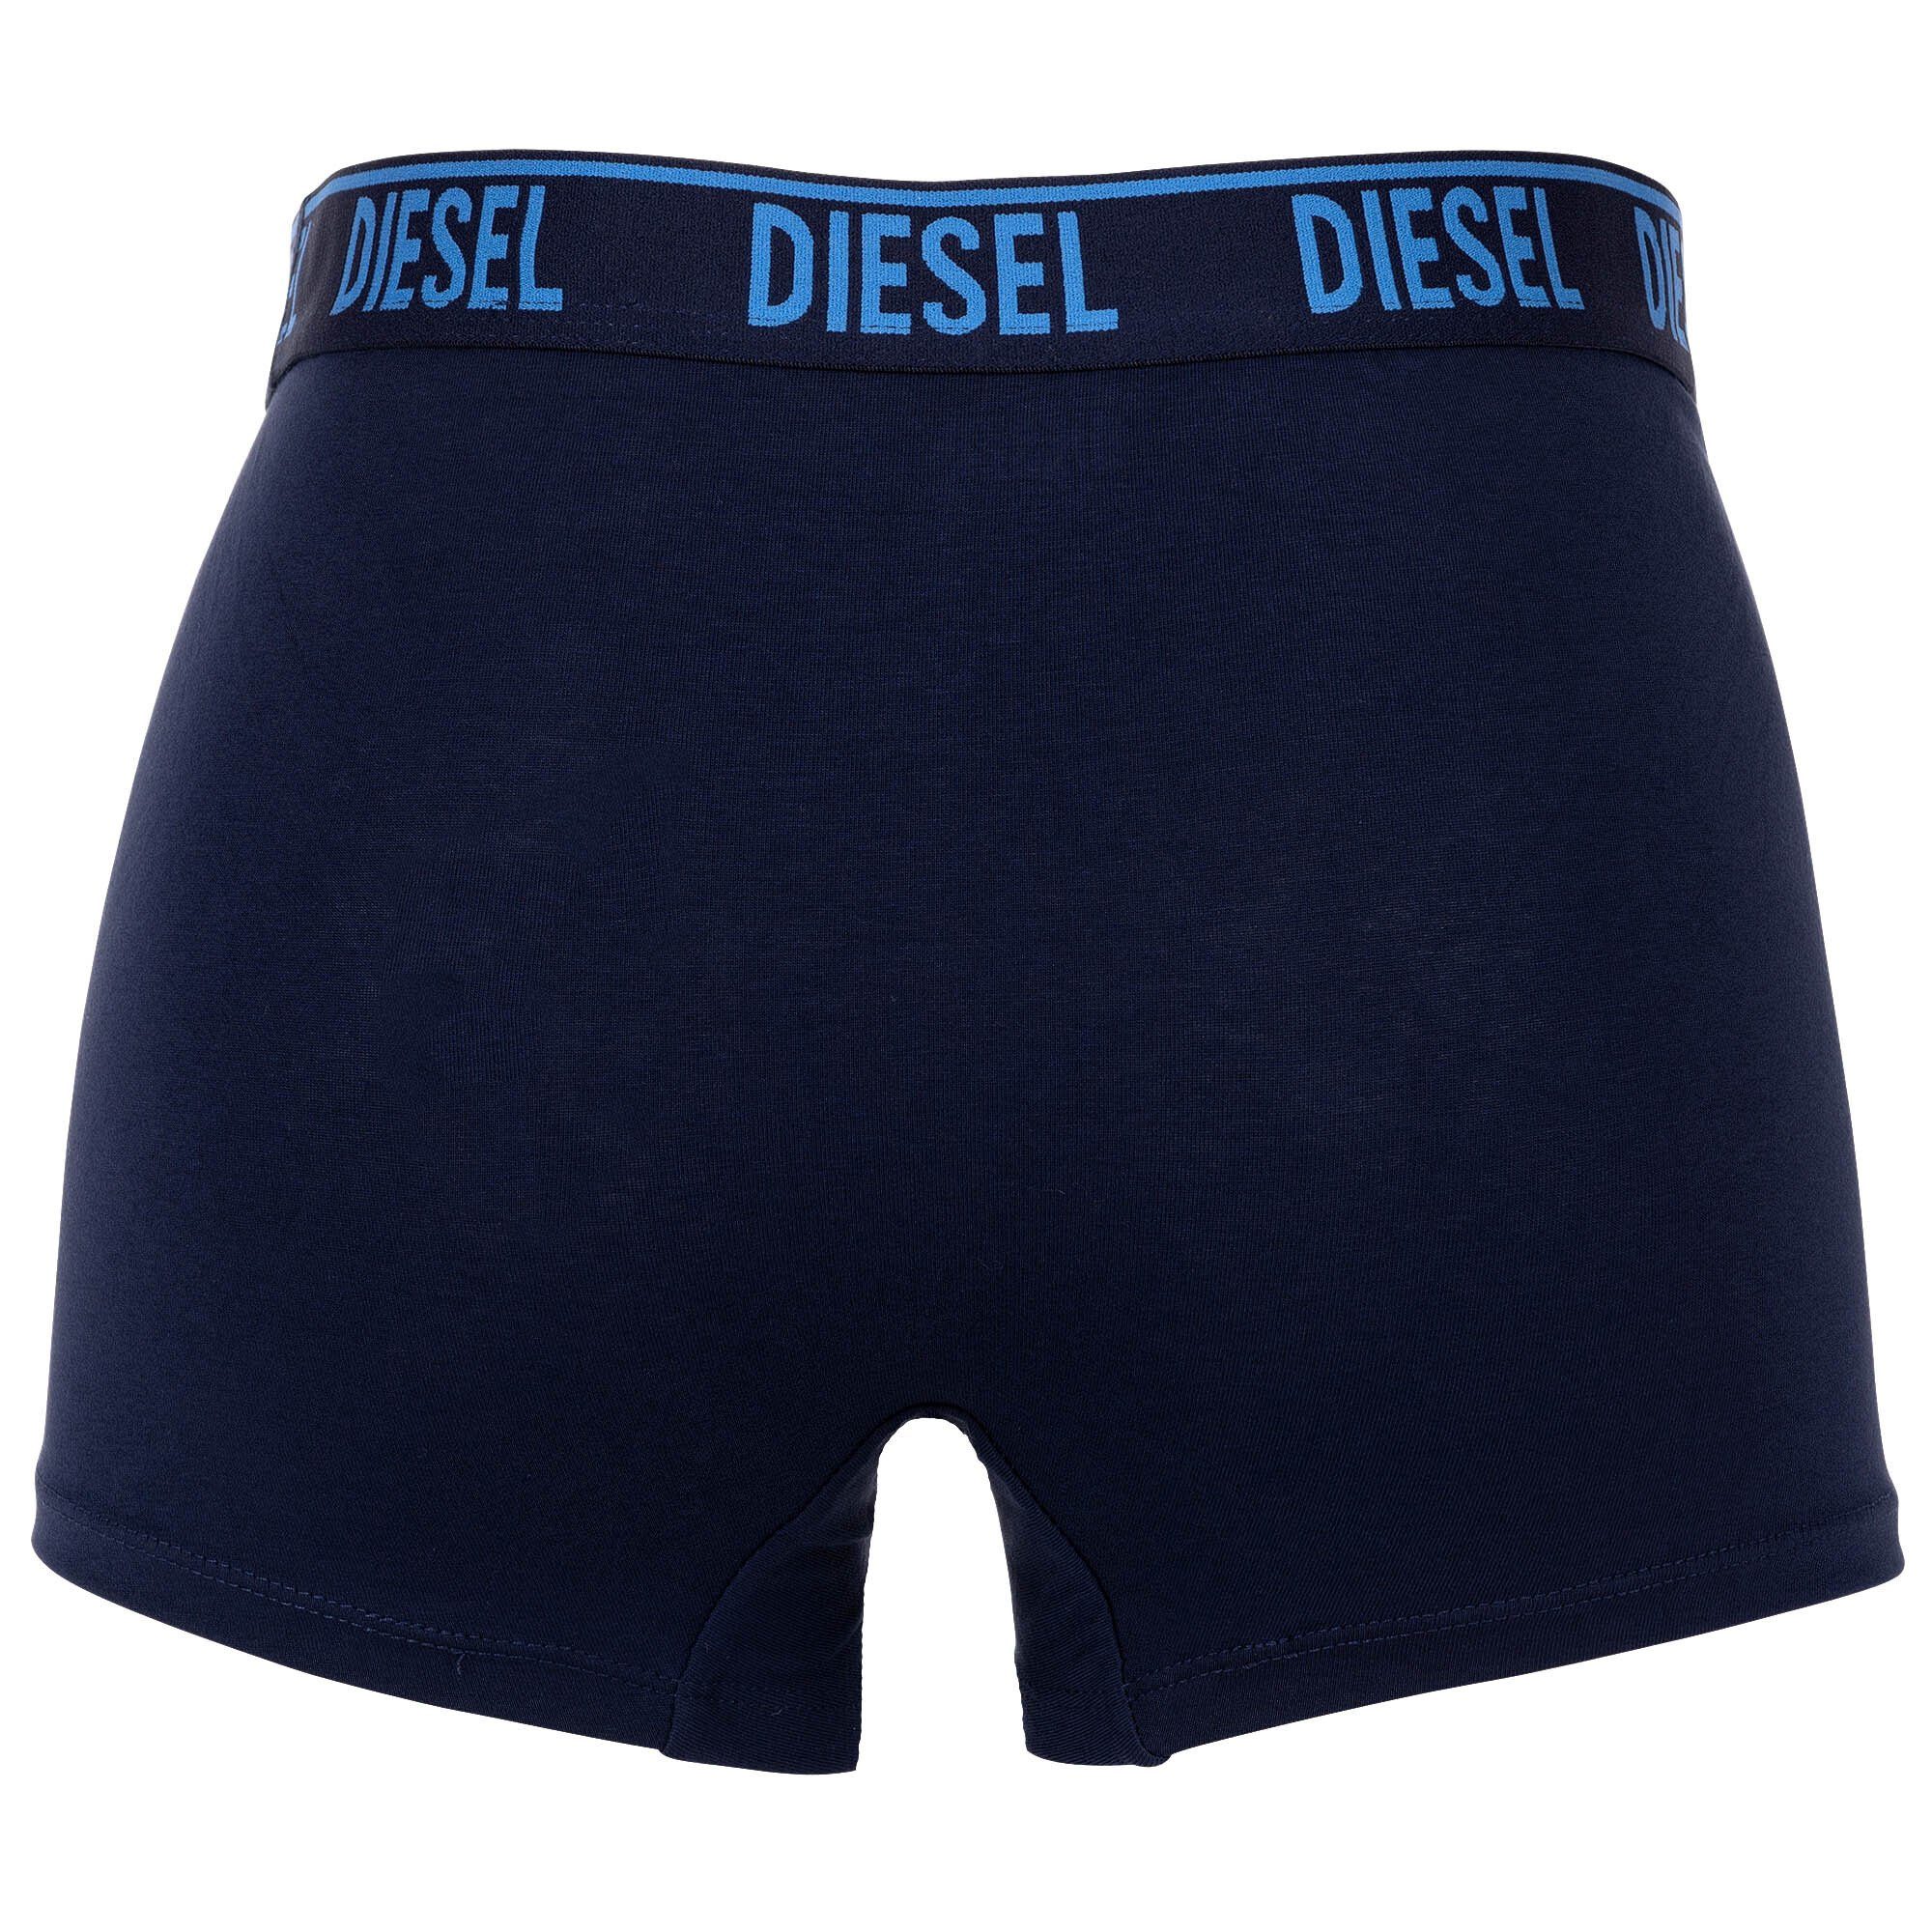 Herren Blau Boxer 3er Boxershorts, Diesel Pack -